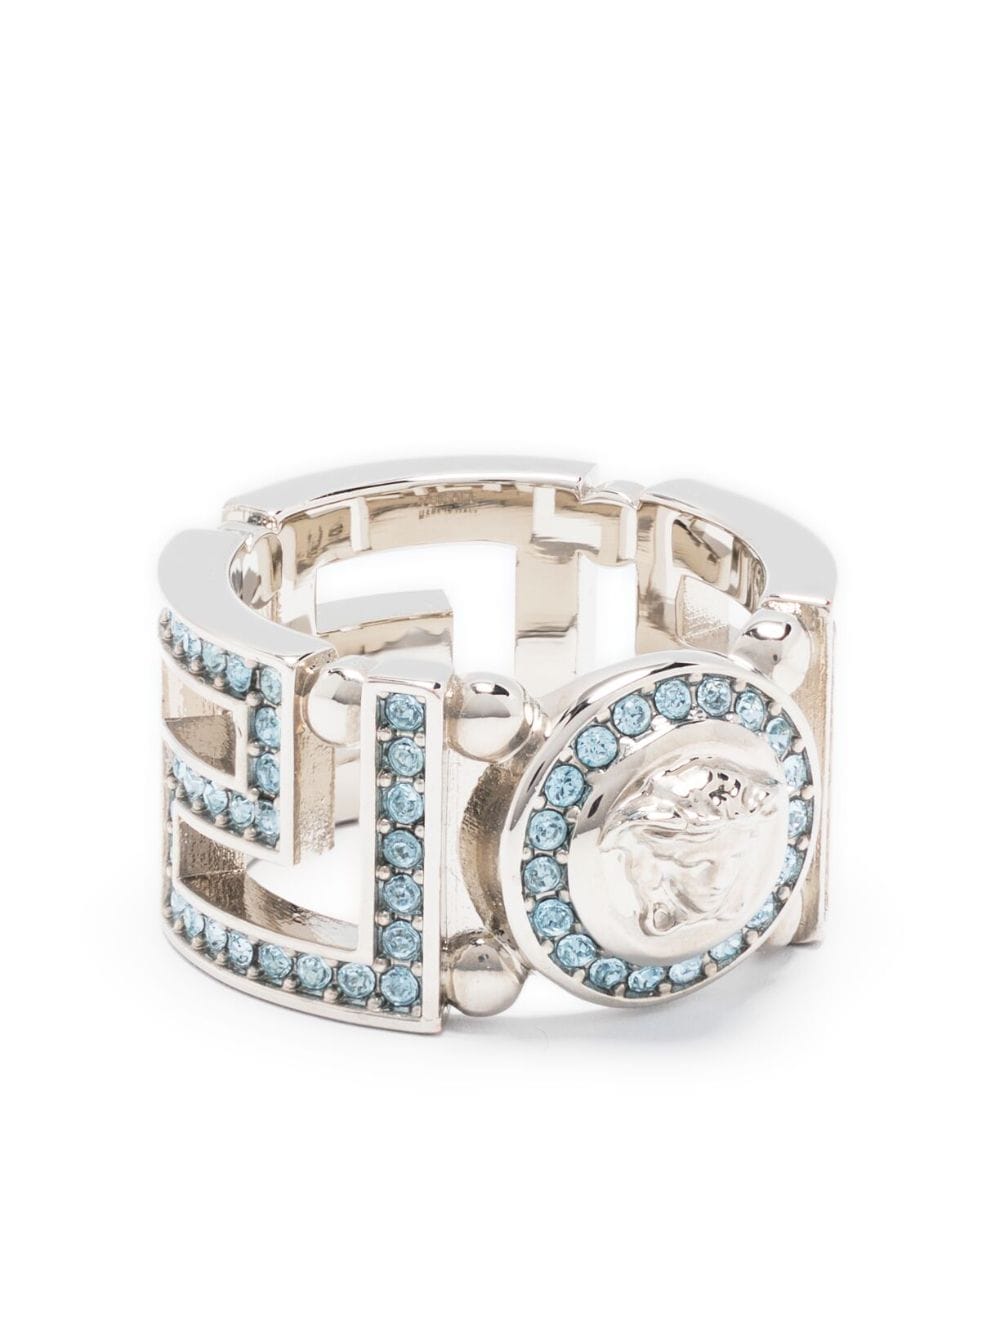 Versace Medusa Greca crystal-embellished ring - Silver